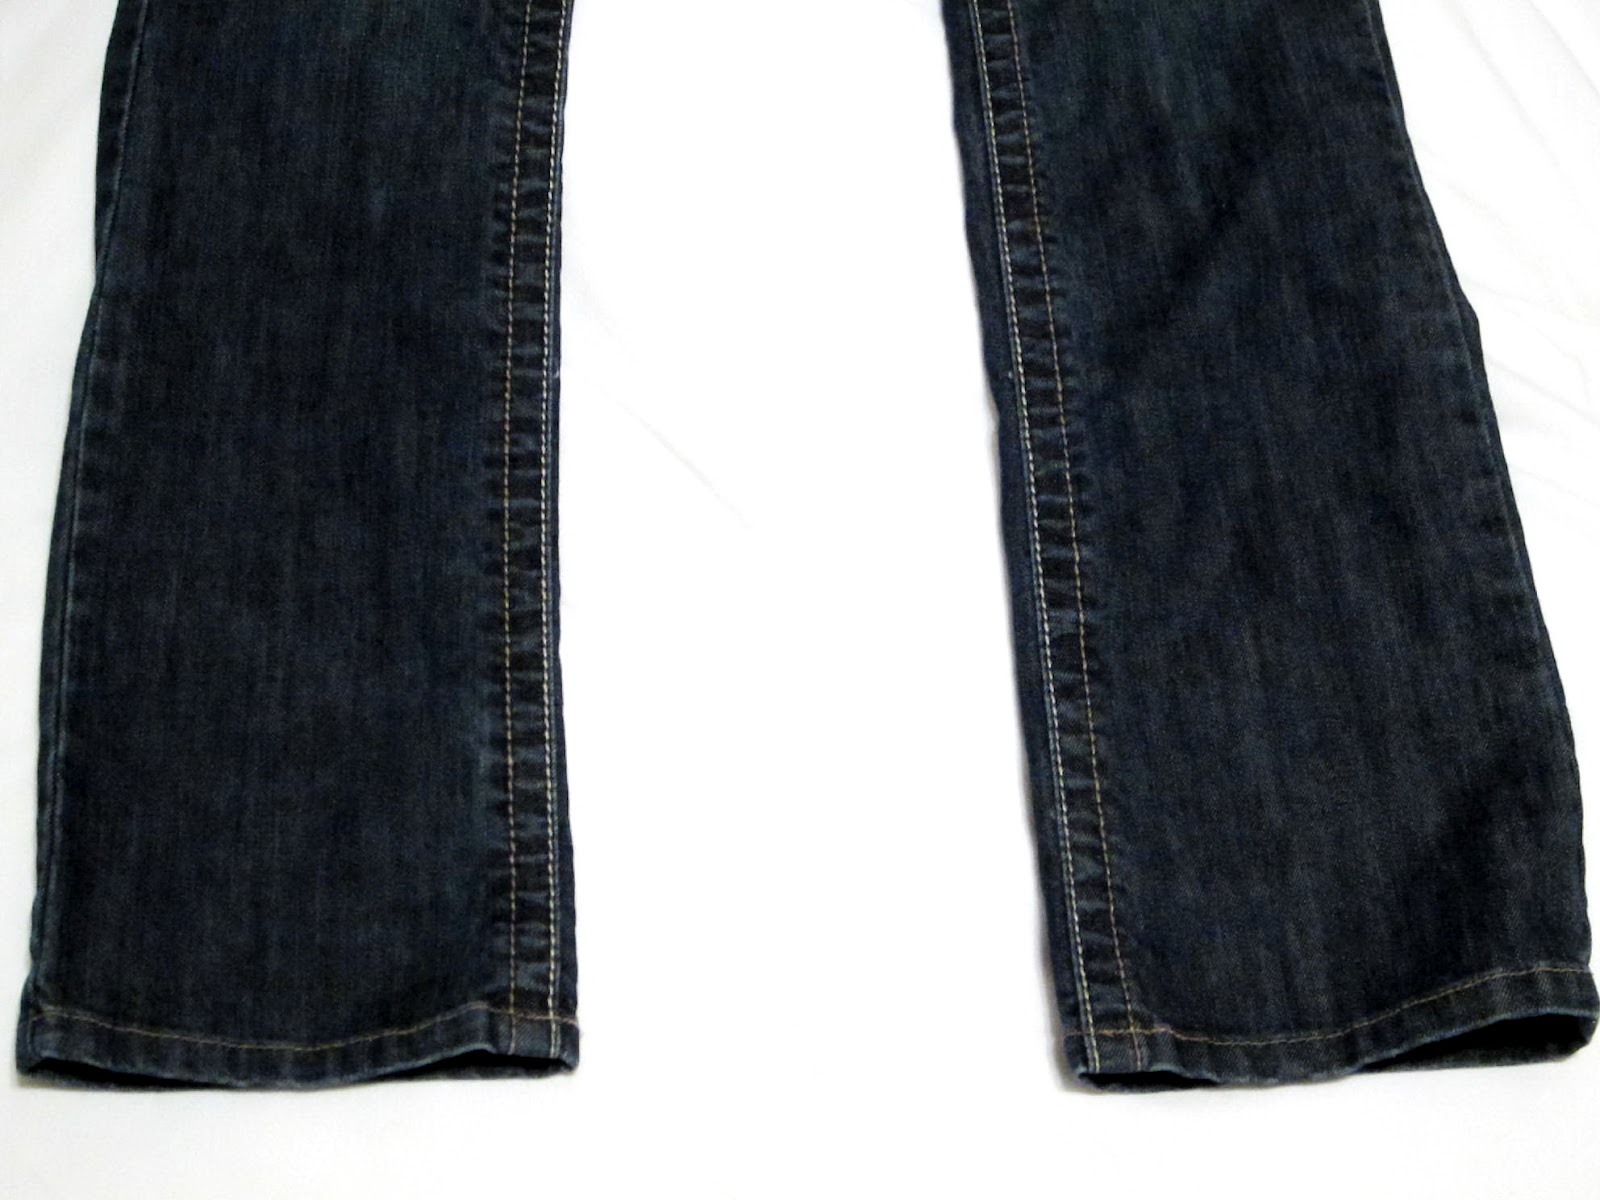 Pre-Owned Top-Shelf Designer Jeans